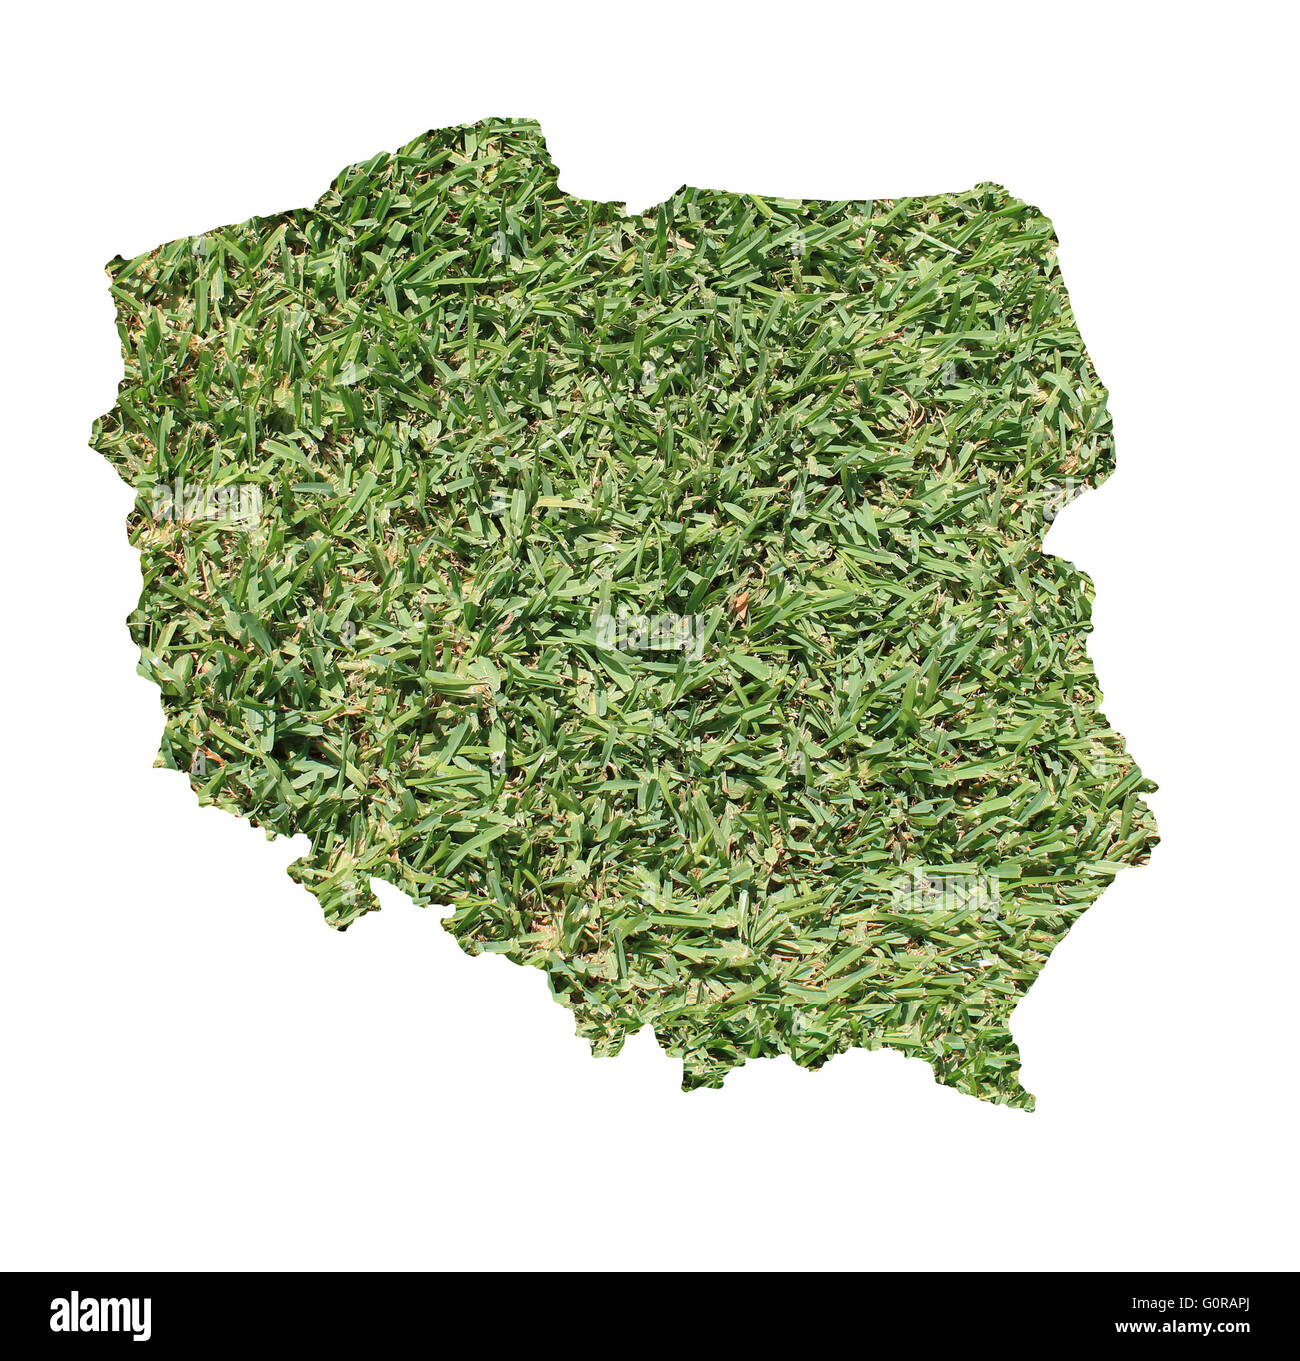 Mappa di Polonia riempito con erba verde, ambientale e concetto ecologico. Foto Stock